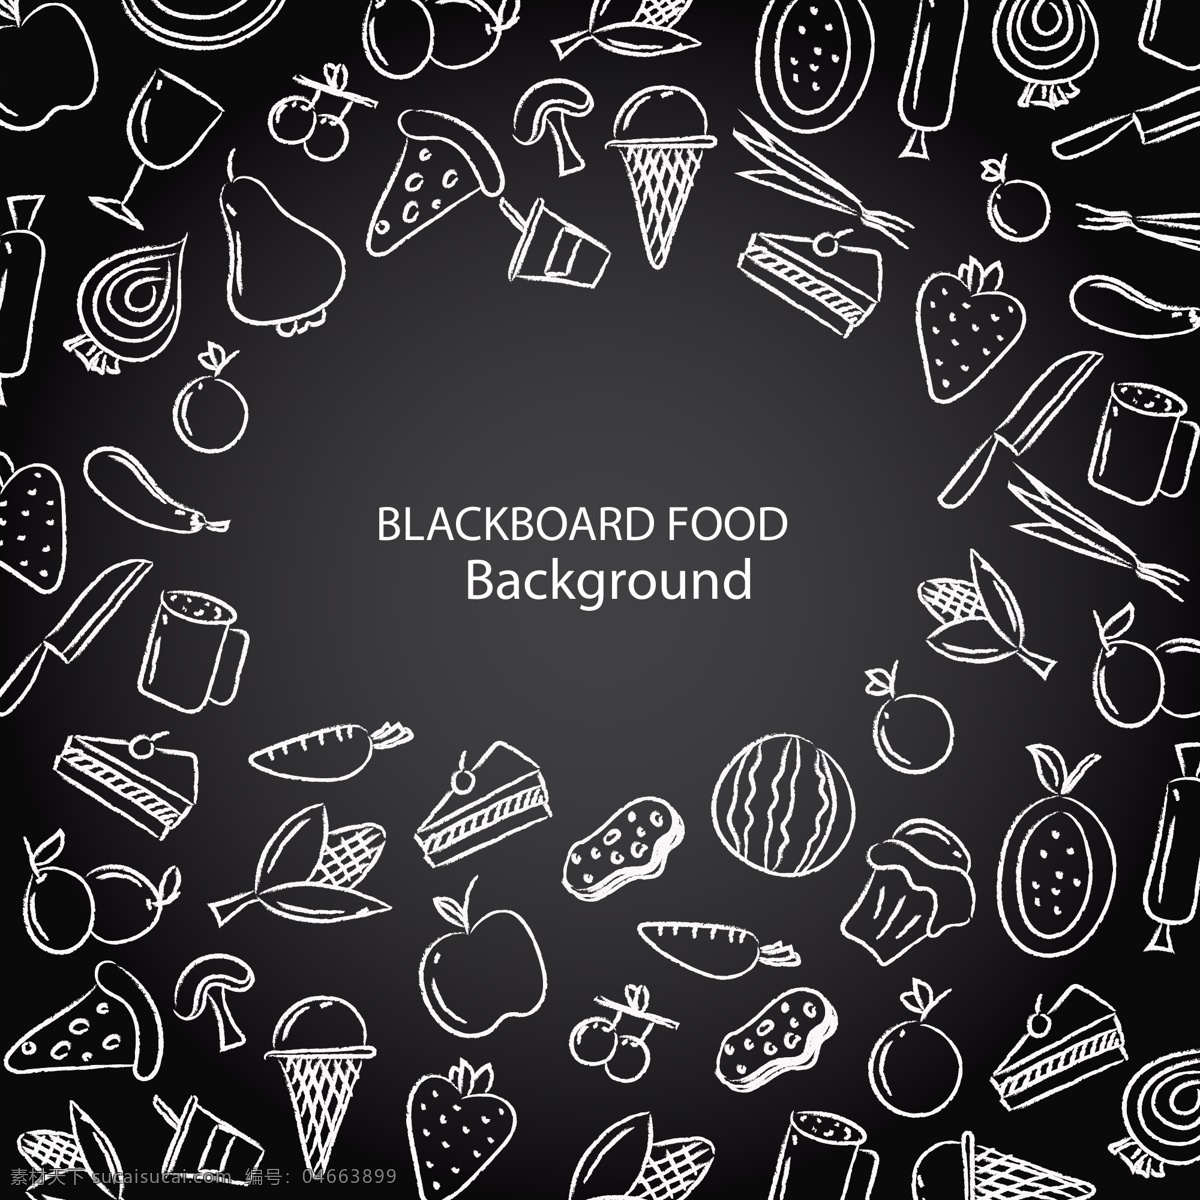 粉笔画食物 白色线条食物 食物背景 黑板食物绘画 食品背景 矢量食物 卡通食物 线条食物 线稿食物 速写食物 食物 生活百科 餐饮美食